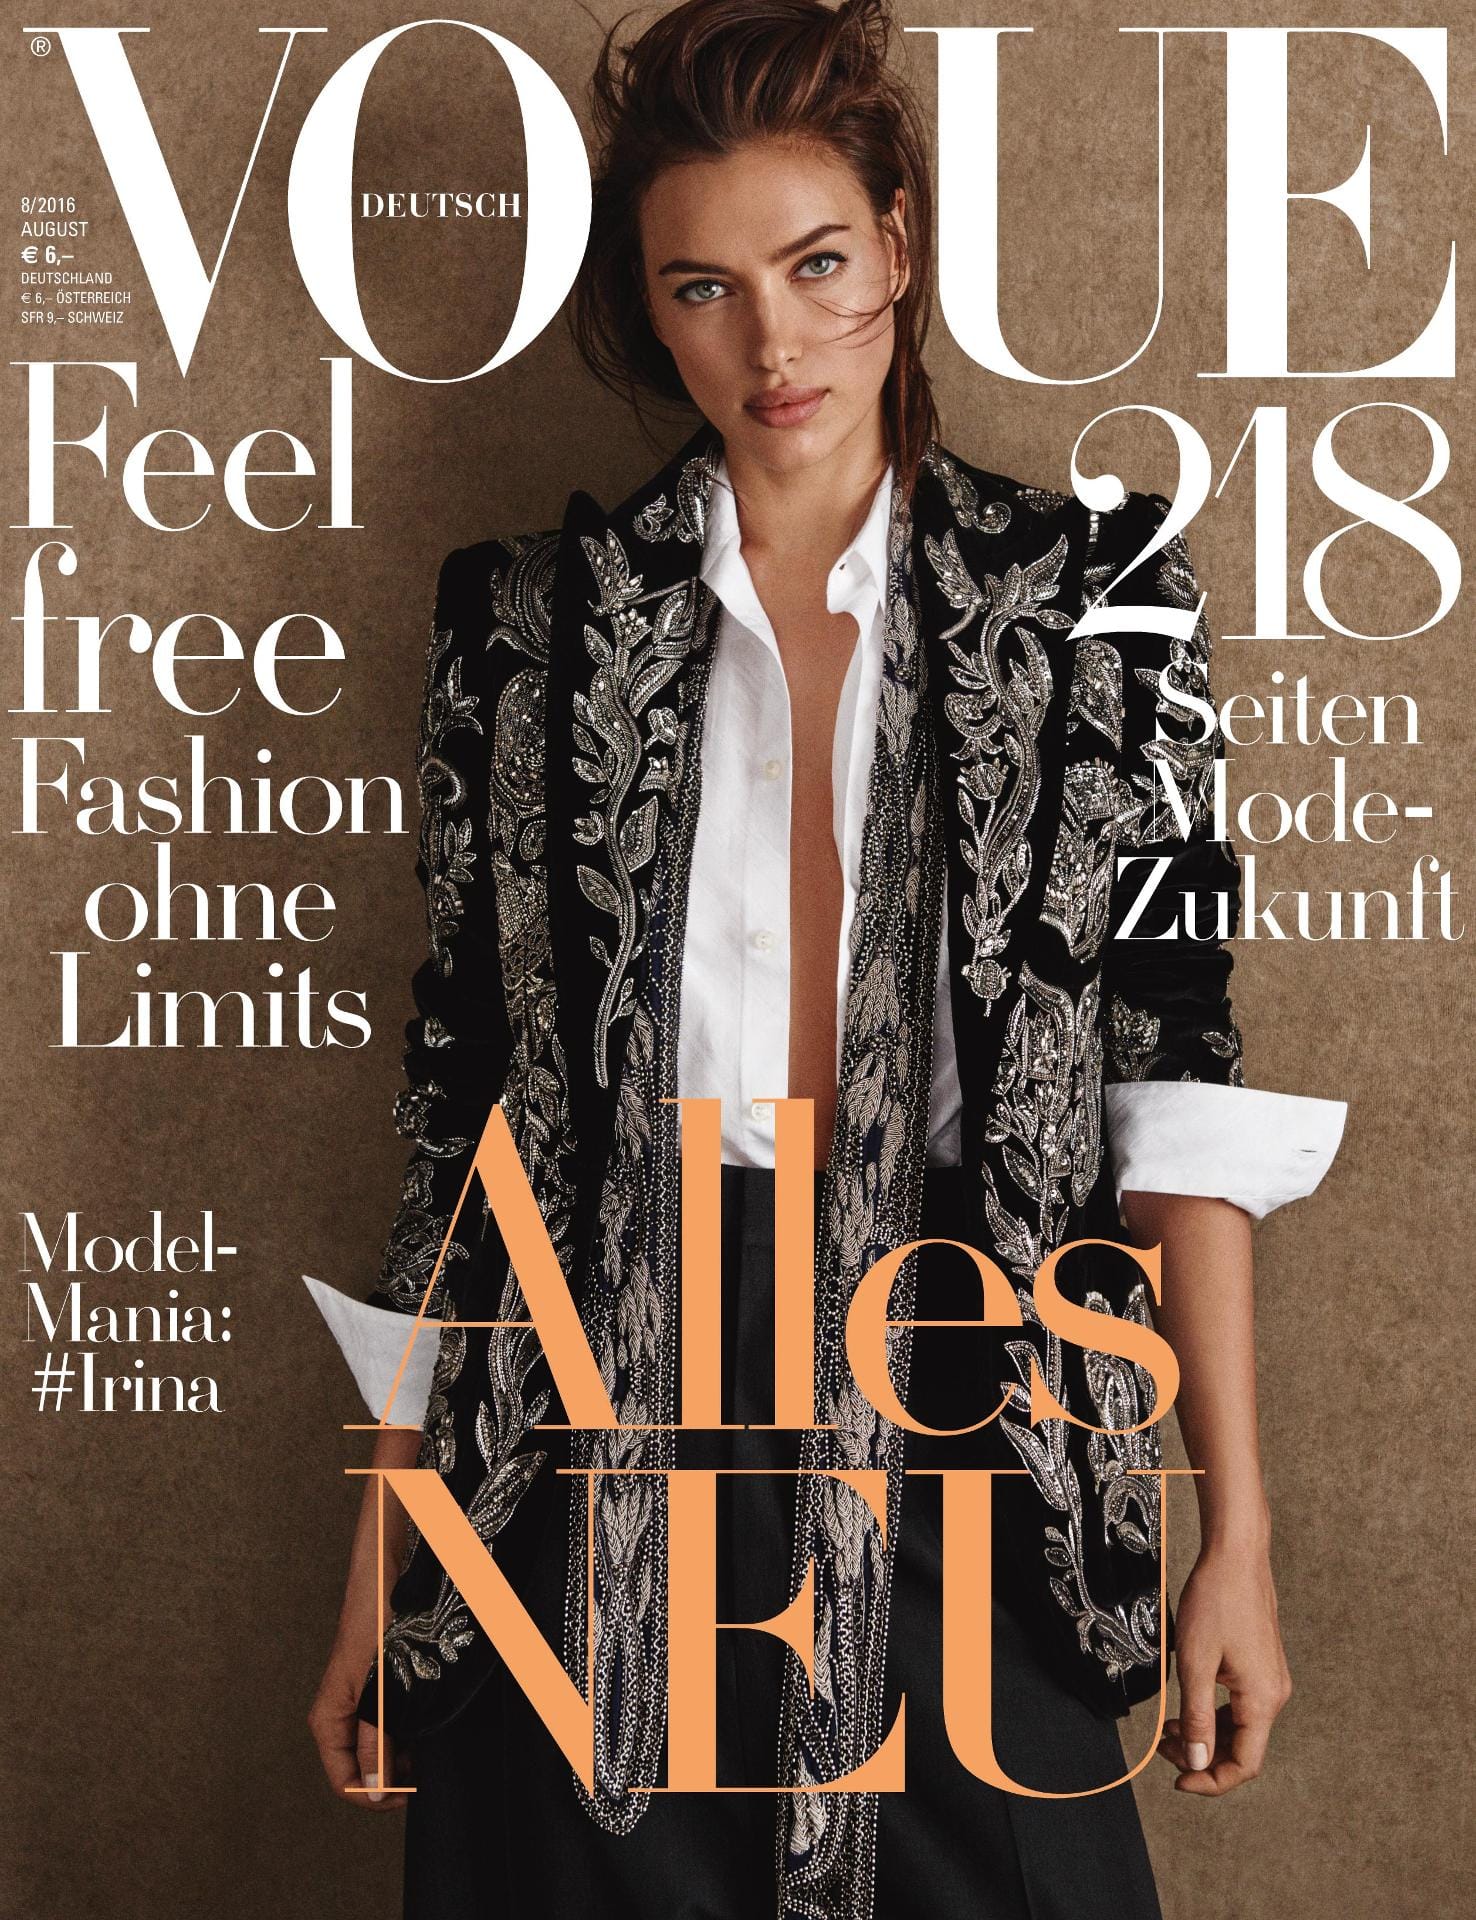 Eins von fünf Titelbildern: Die August-Ausgabe der deutschen "Vogue" widmete allen fünf Schönheiten ein eigenes Cover.